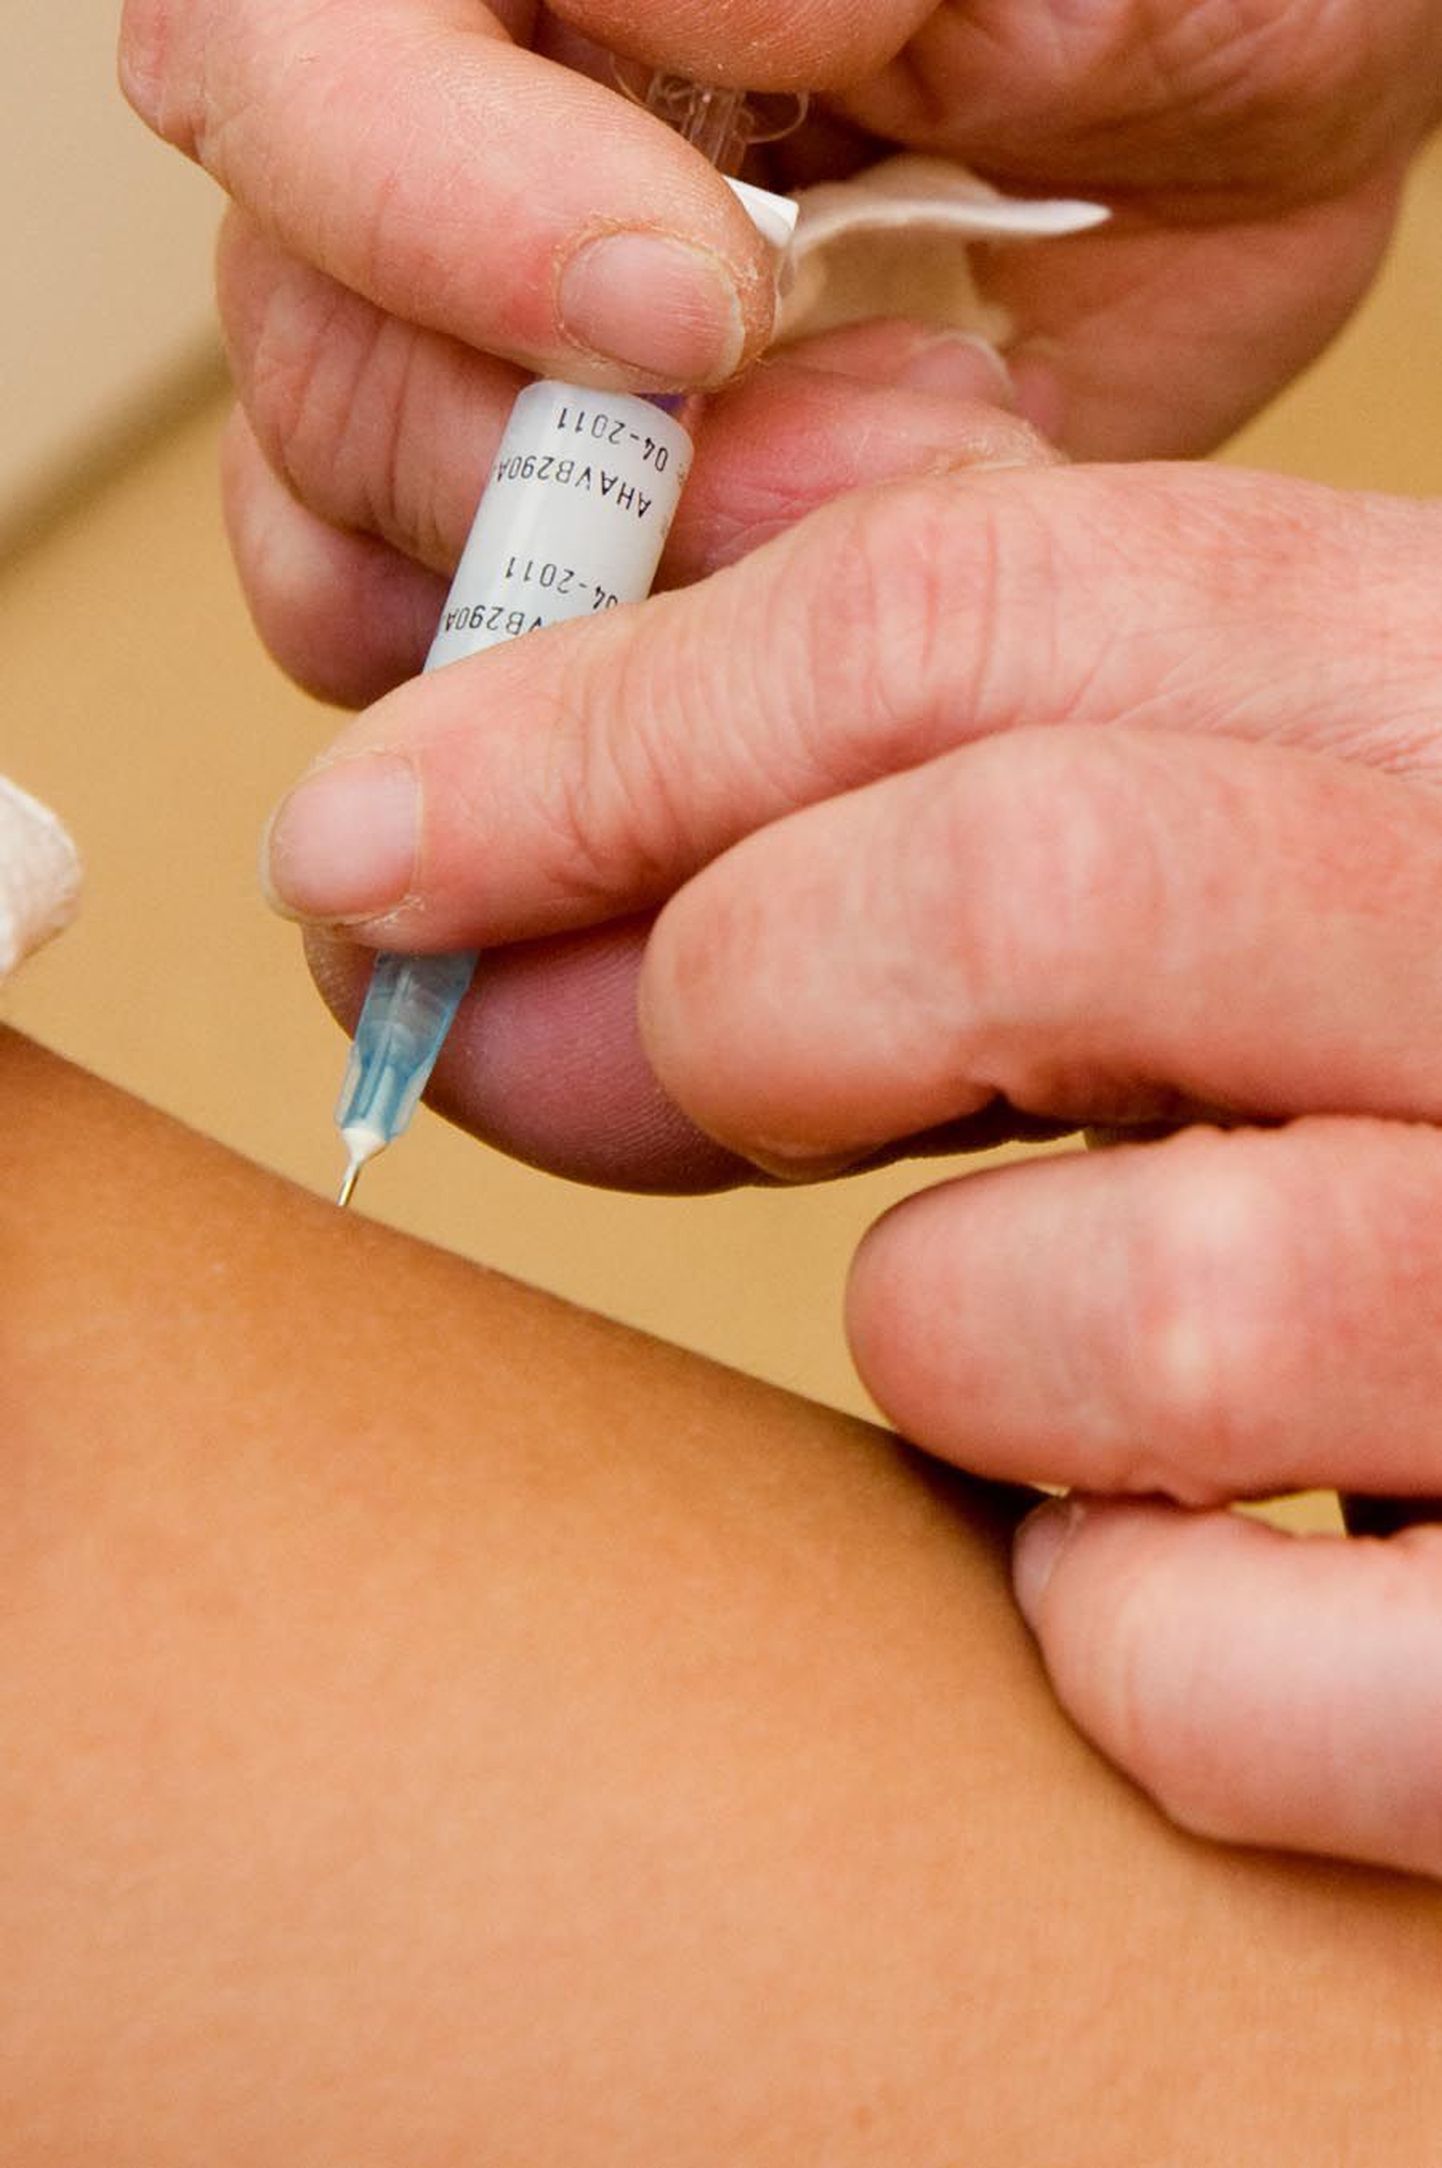 Пожилые люди и дети могут пережить негативные эффекты вакцин.